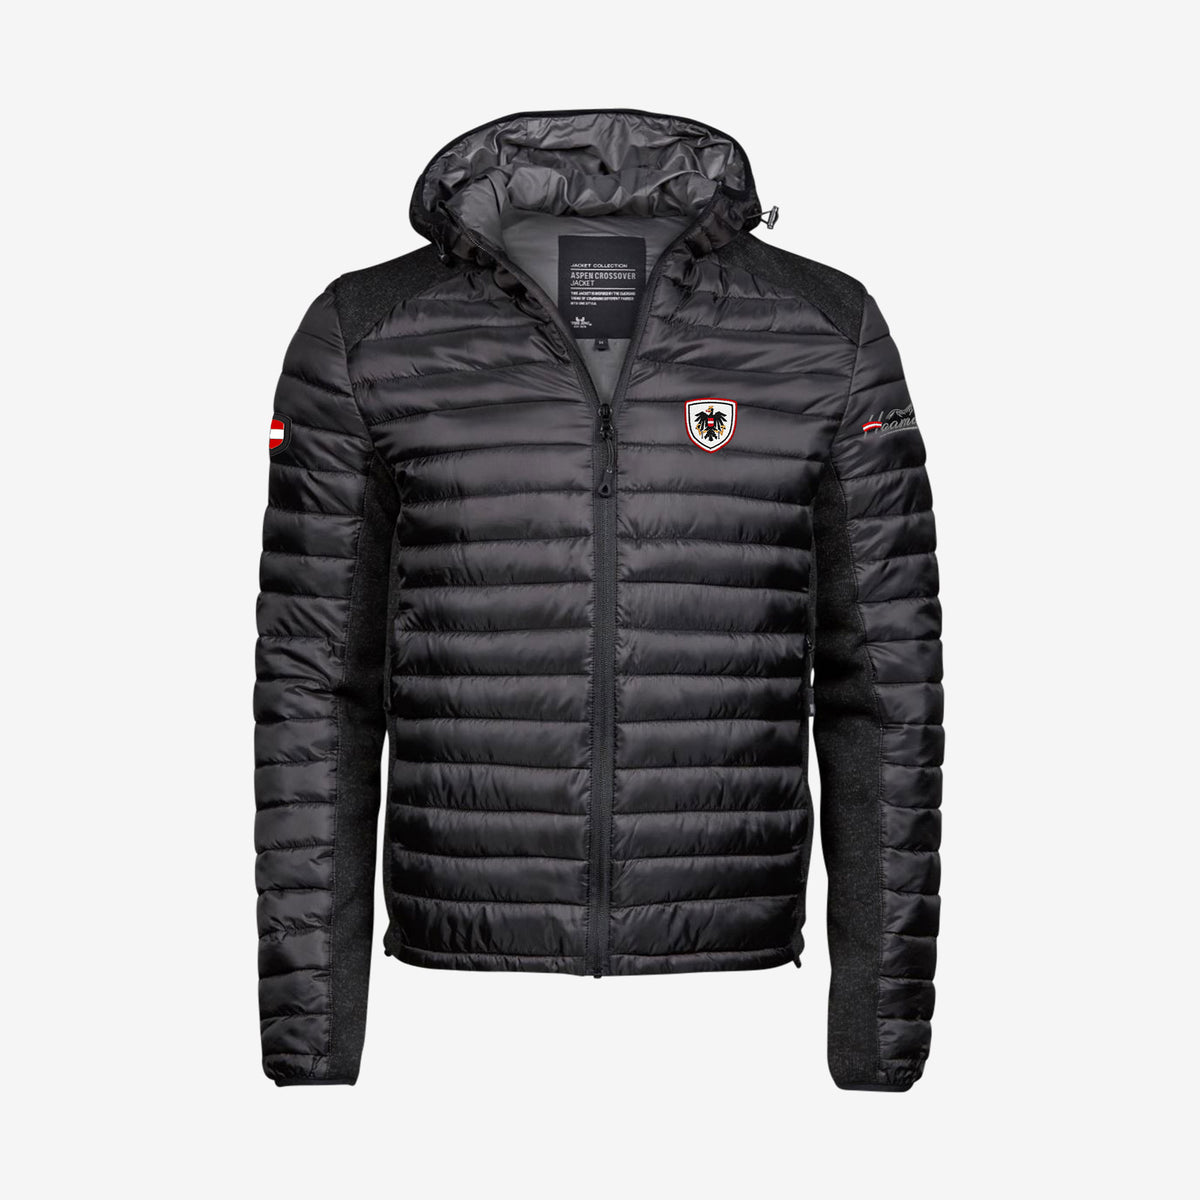 Alpine Jacke mit Österreich Wappen #Farbe_Schwarz